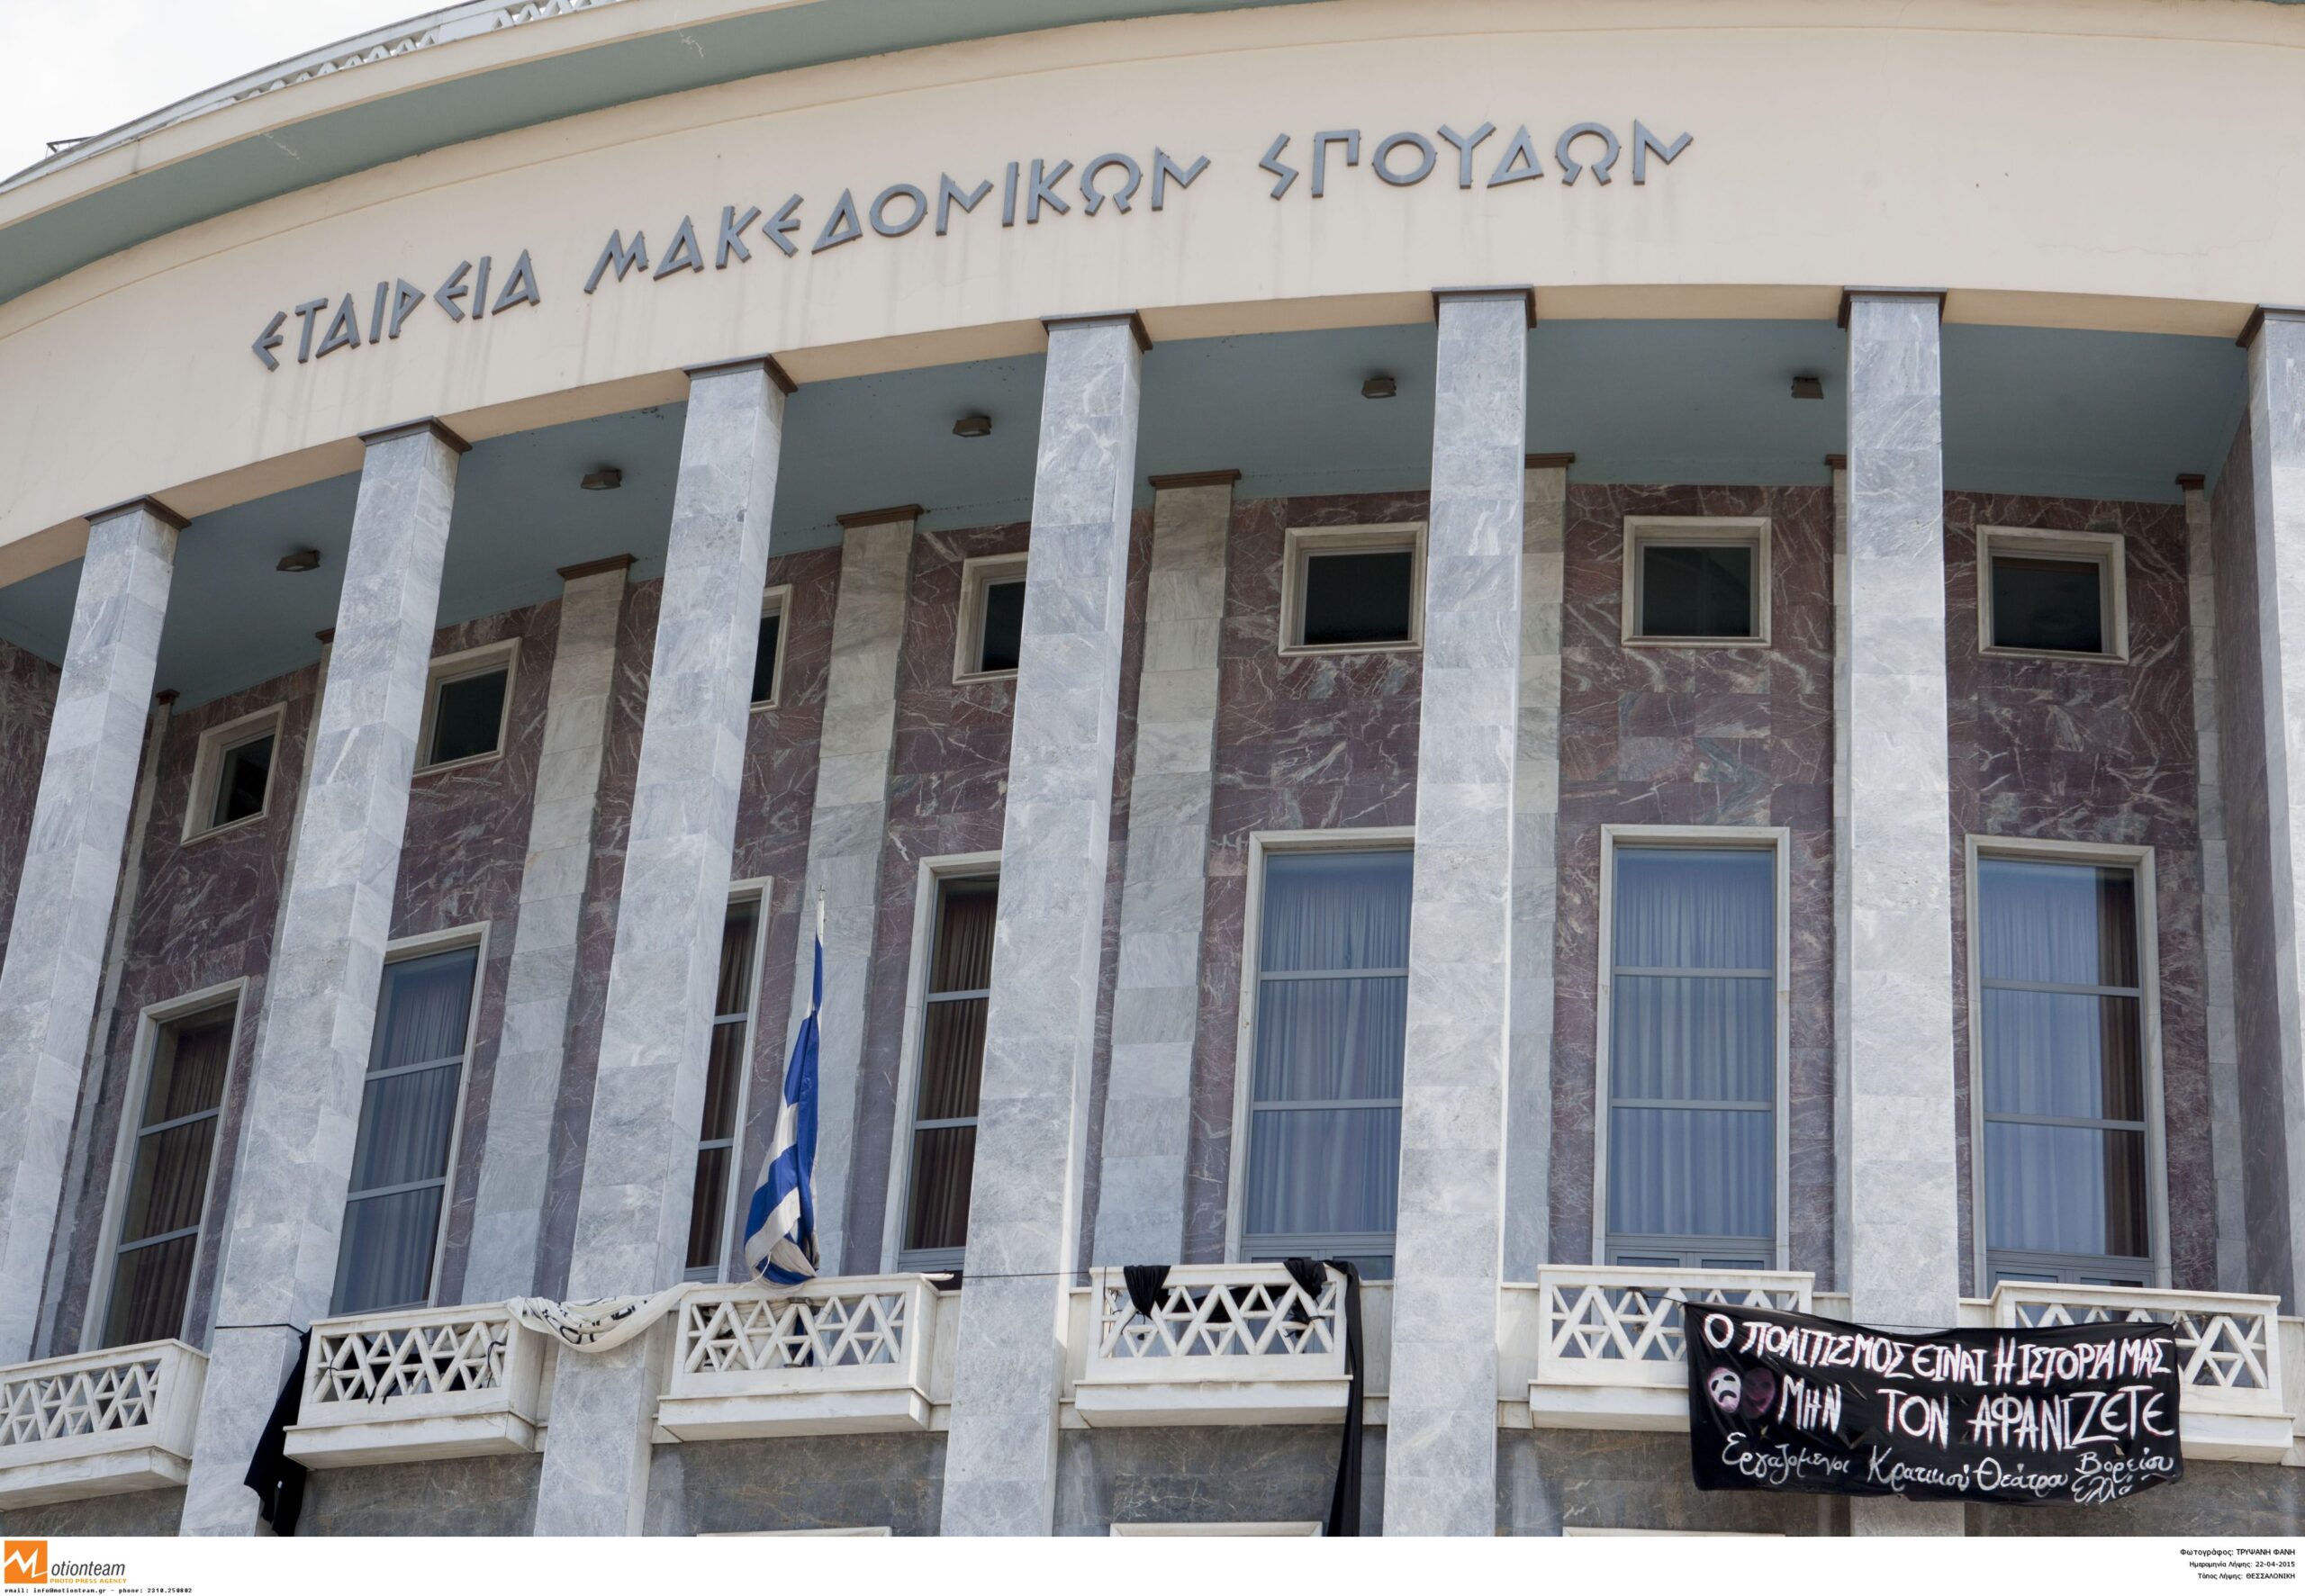 Κορονοϊός: Αναστολή των παραστάσεων του ΚΘΒΕ για 15 ημέρες